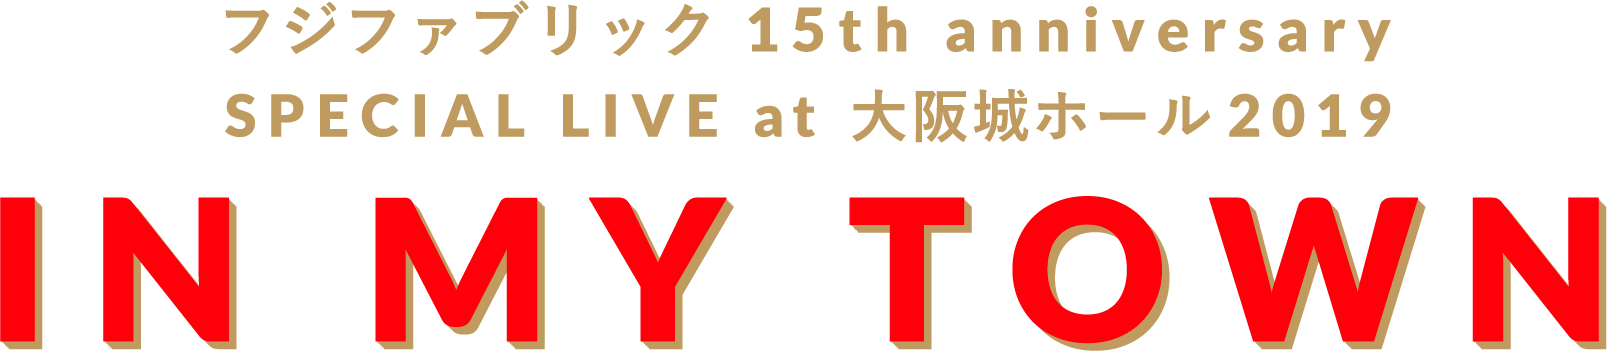 フジファブリック 15th anniversarySPECIAL LIVE at 大阪城ホール2019 IN MY TOWN